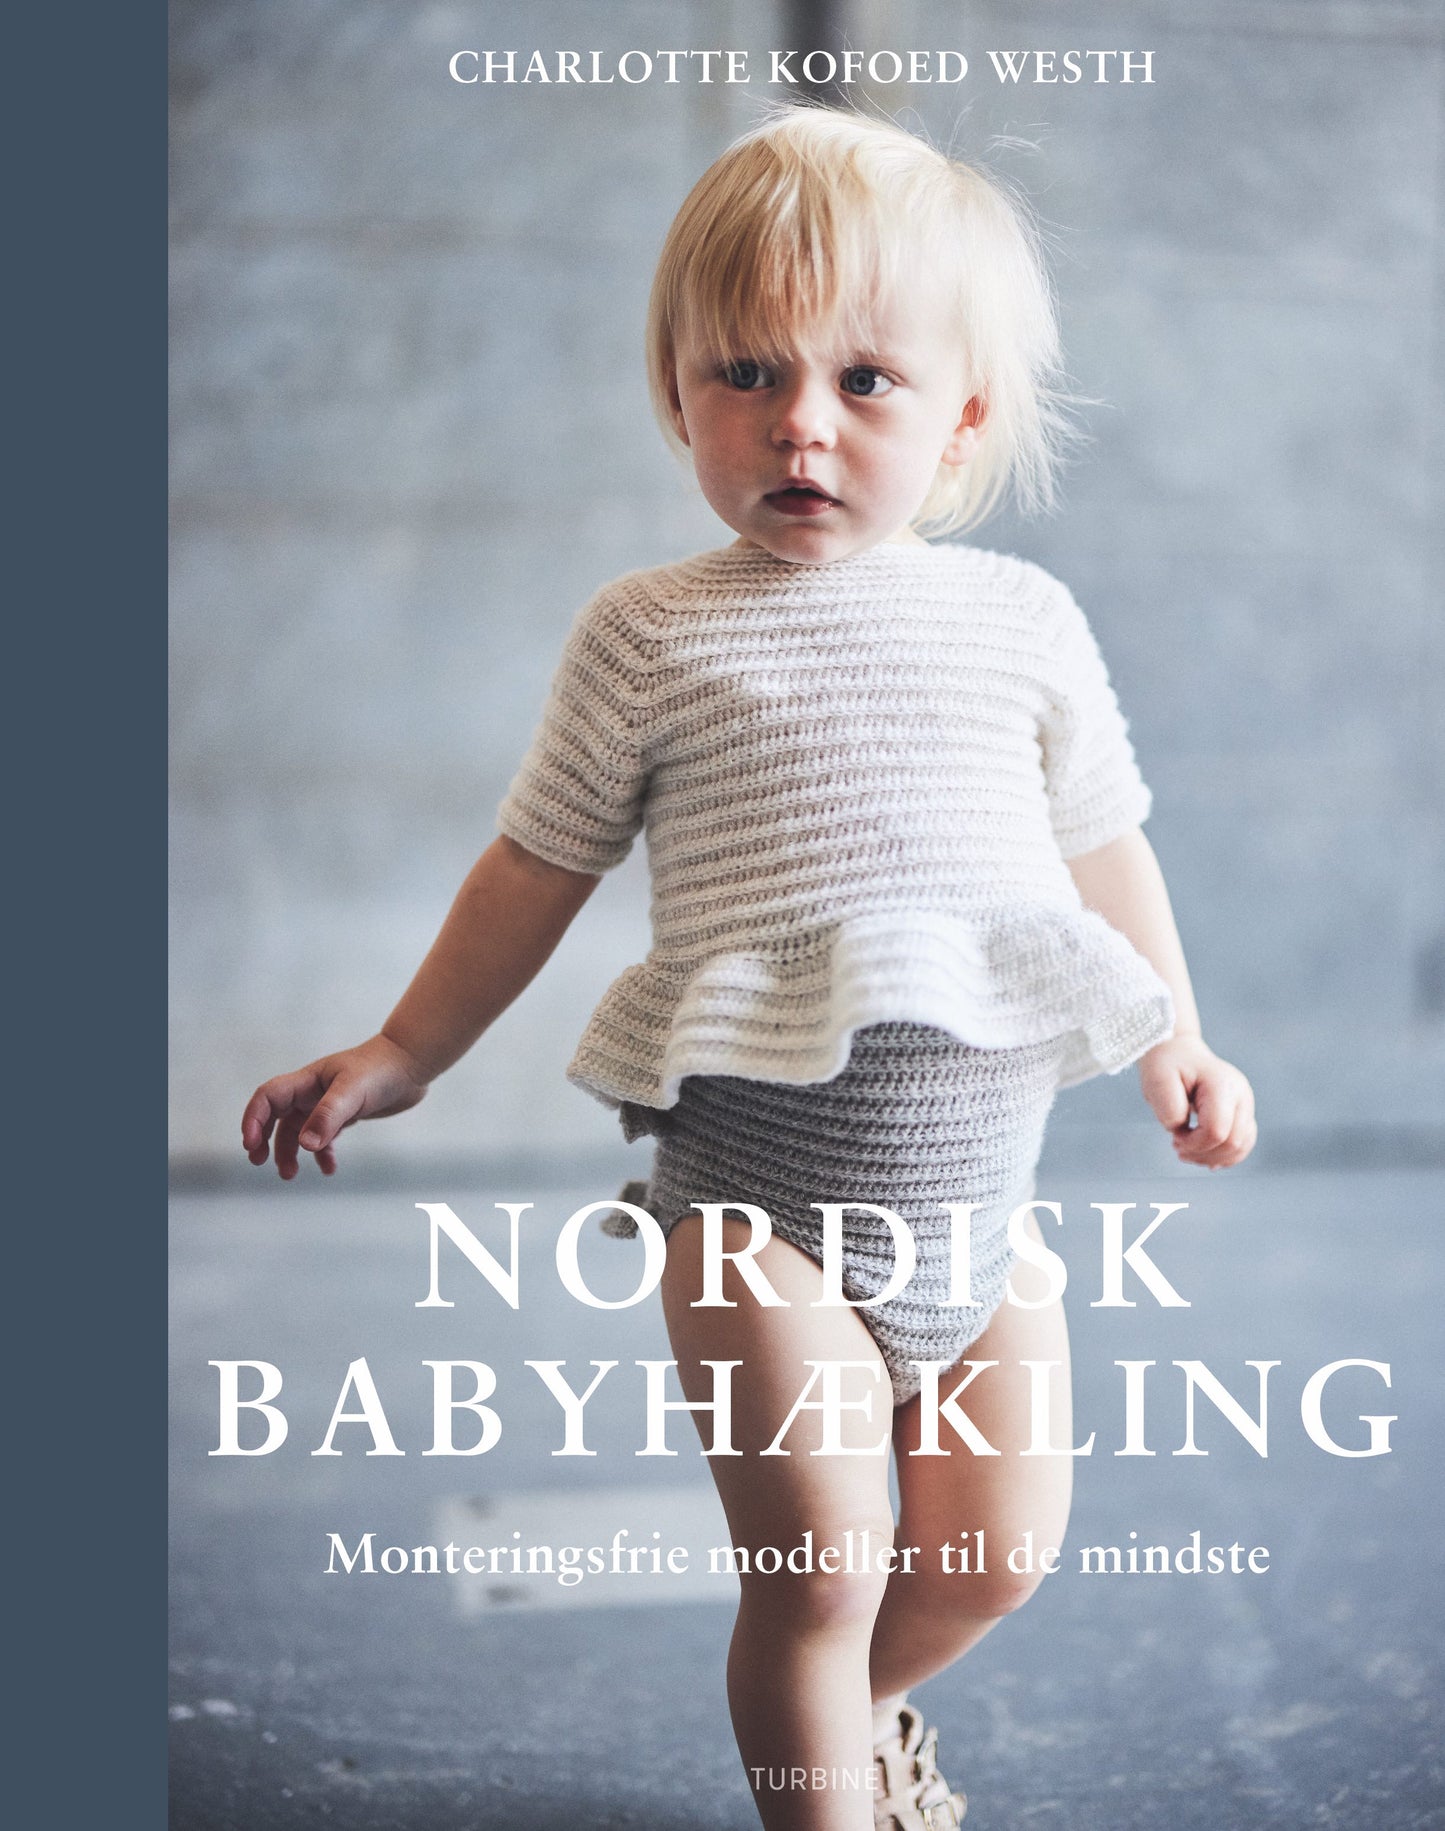 Nordisk babyhækling - monteringsfrie modeller til de mindste